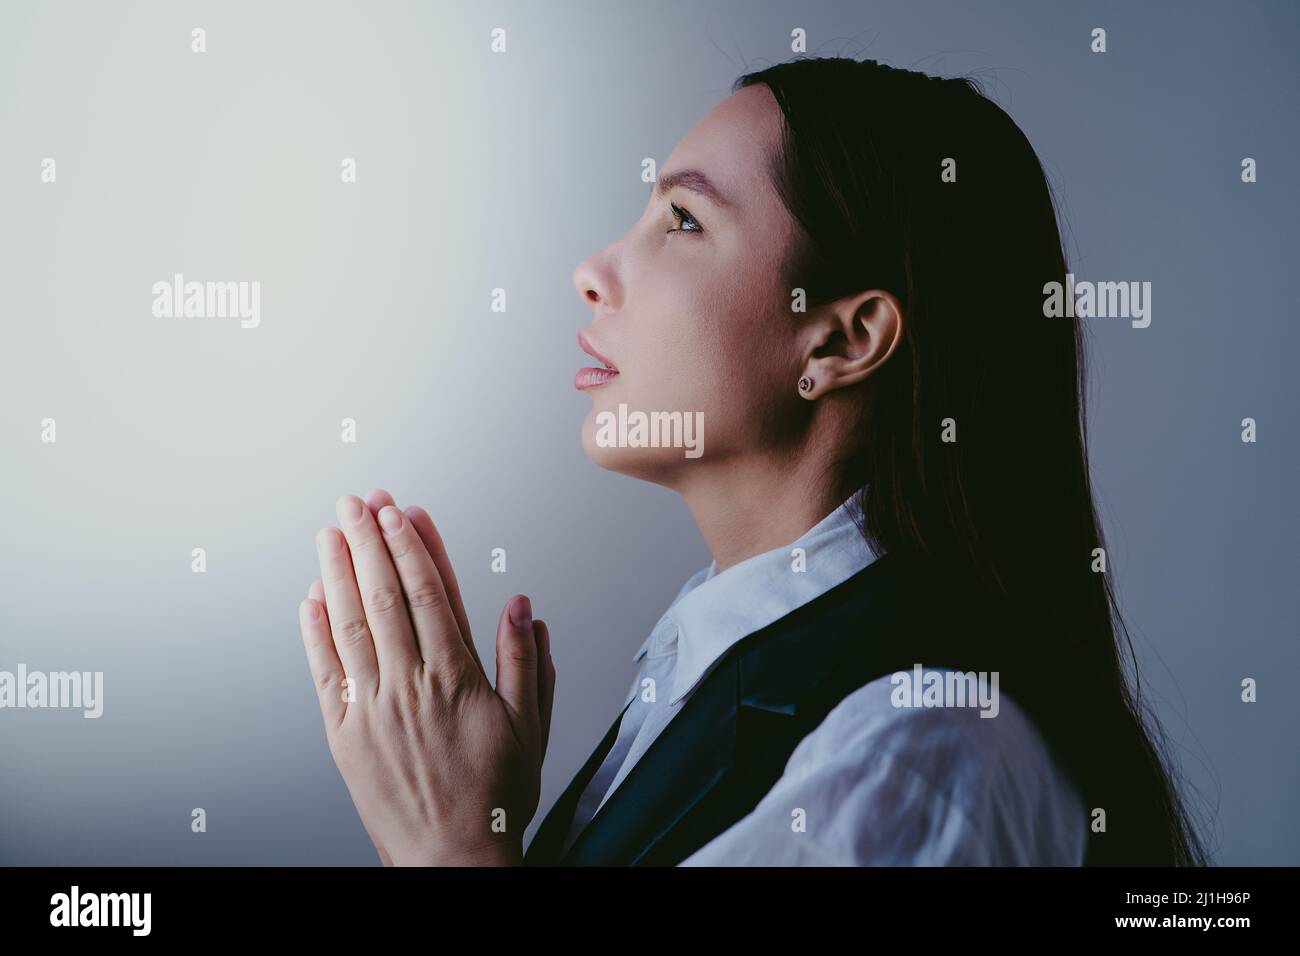 Junge Brünette Mädchen beten zu gott, Nahaufnahme Porträt. Frau faltet ihre Hände im Gebet. Glaube und Hoffnung Konzept. Stockfoto